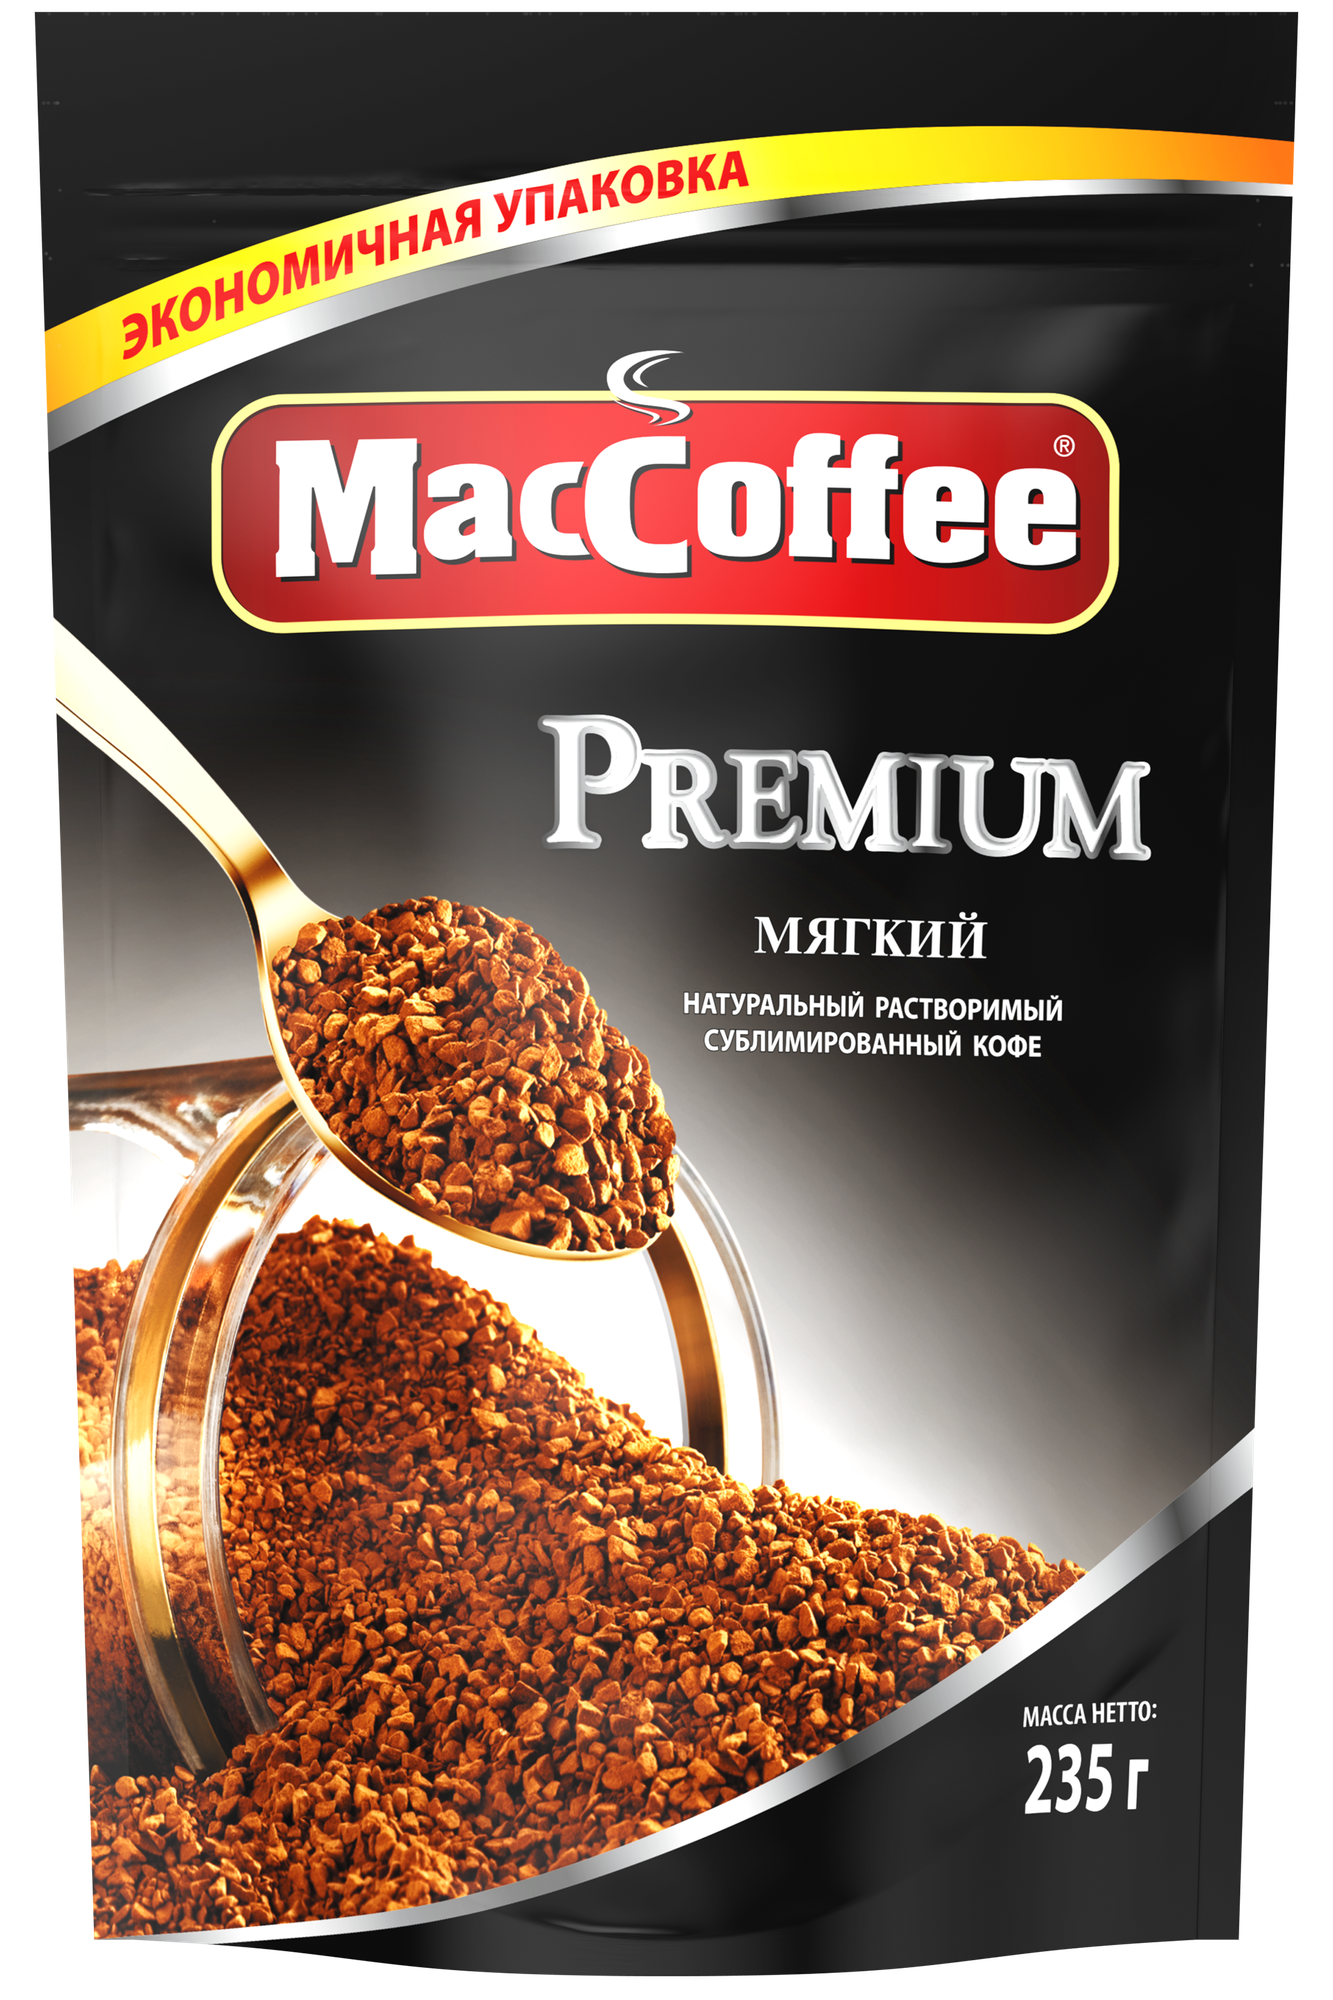 Растворимый кофе MacCoffee Premium, пакет, 235 г